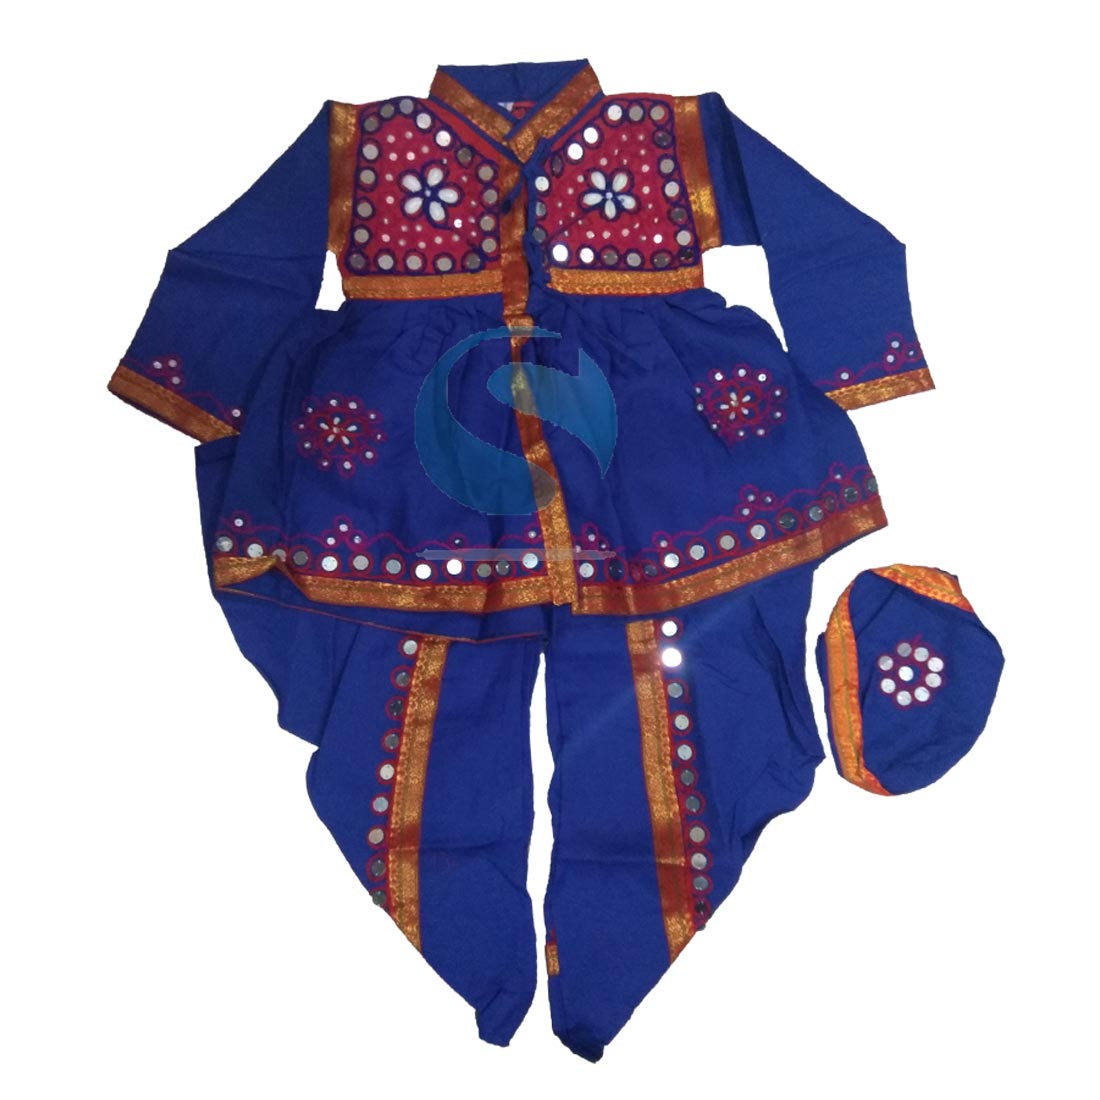 Gujarat Indian State Fancy Dress Costume For Boys – 30338 – Fancy Dress ...